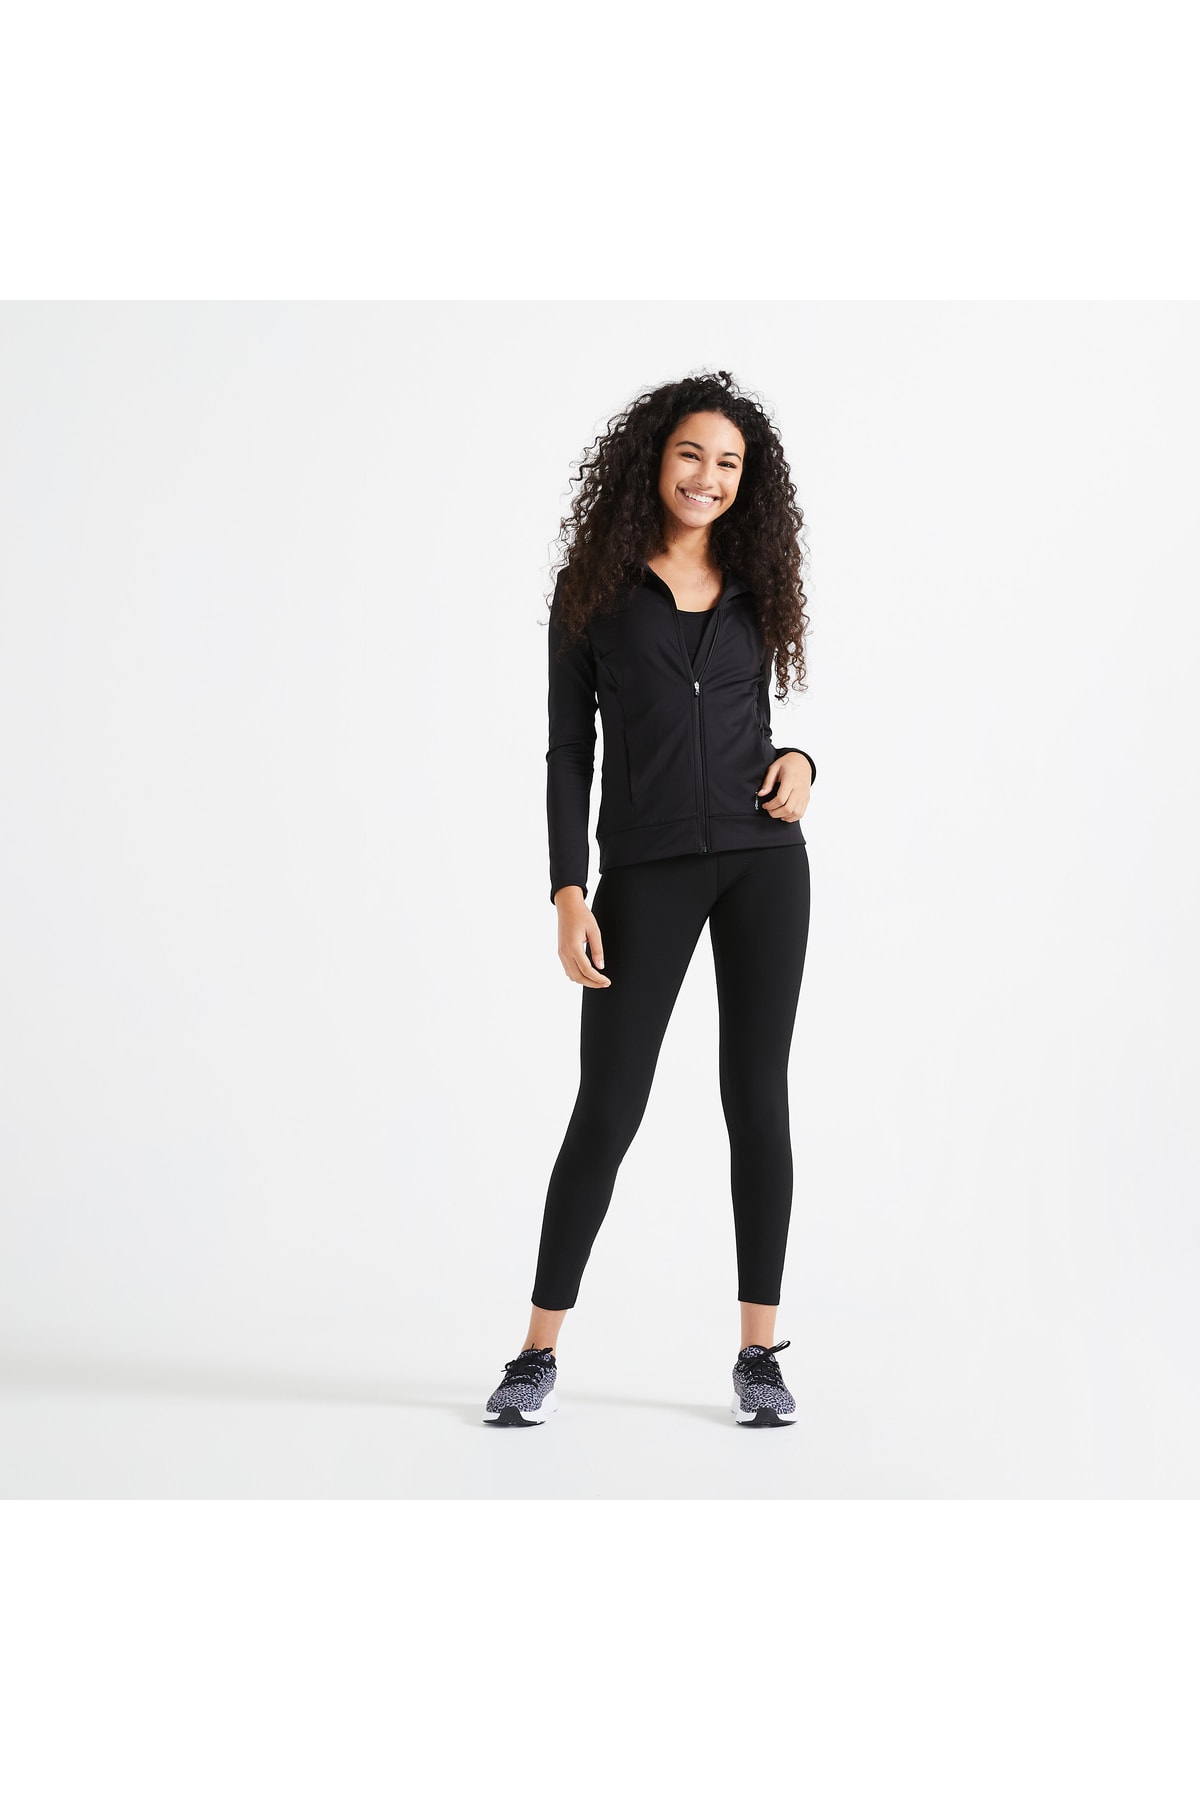 Decathlon Domyos Kadın Siyah Fermuarlı Sweatshirt 100 - Fitness Kardiyo